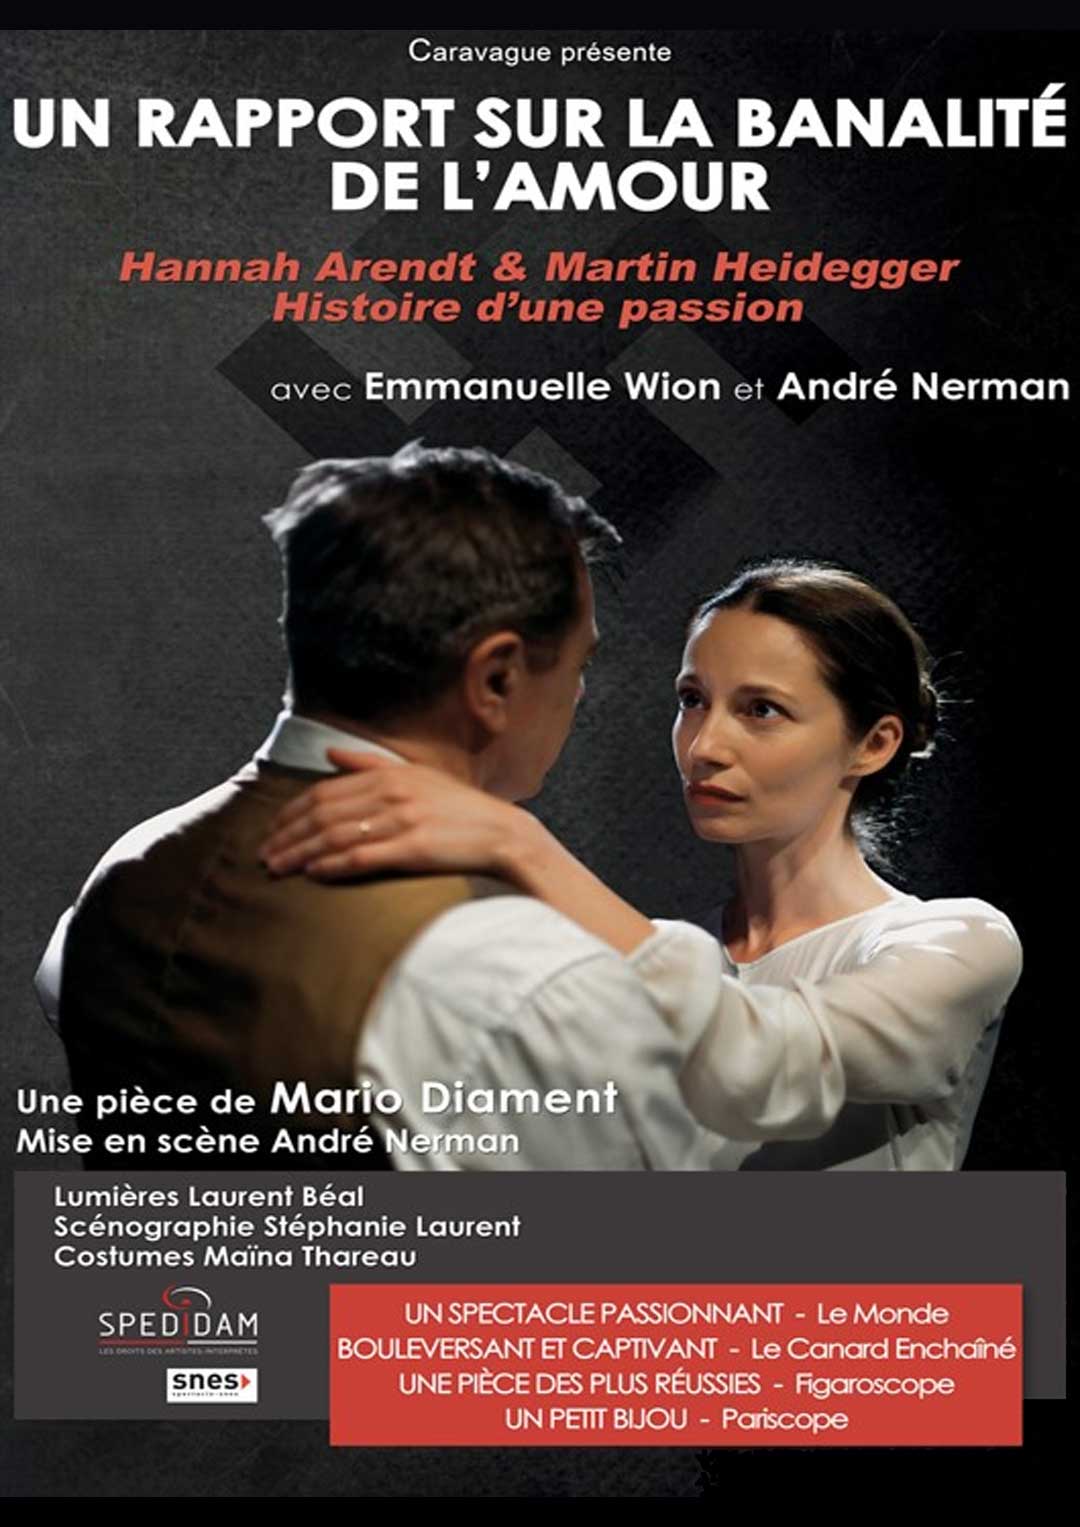 UN RAPPORT SUR LA BANALITÉ DE L'AMOUR. Mardi 12 février à 20h30 au Ciné-Théâtre.